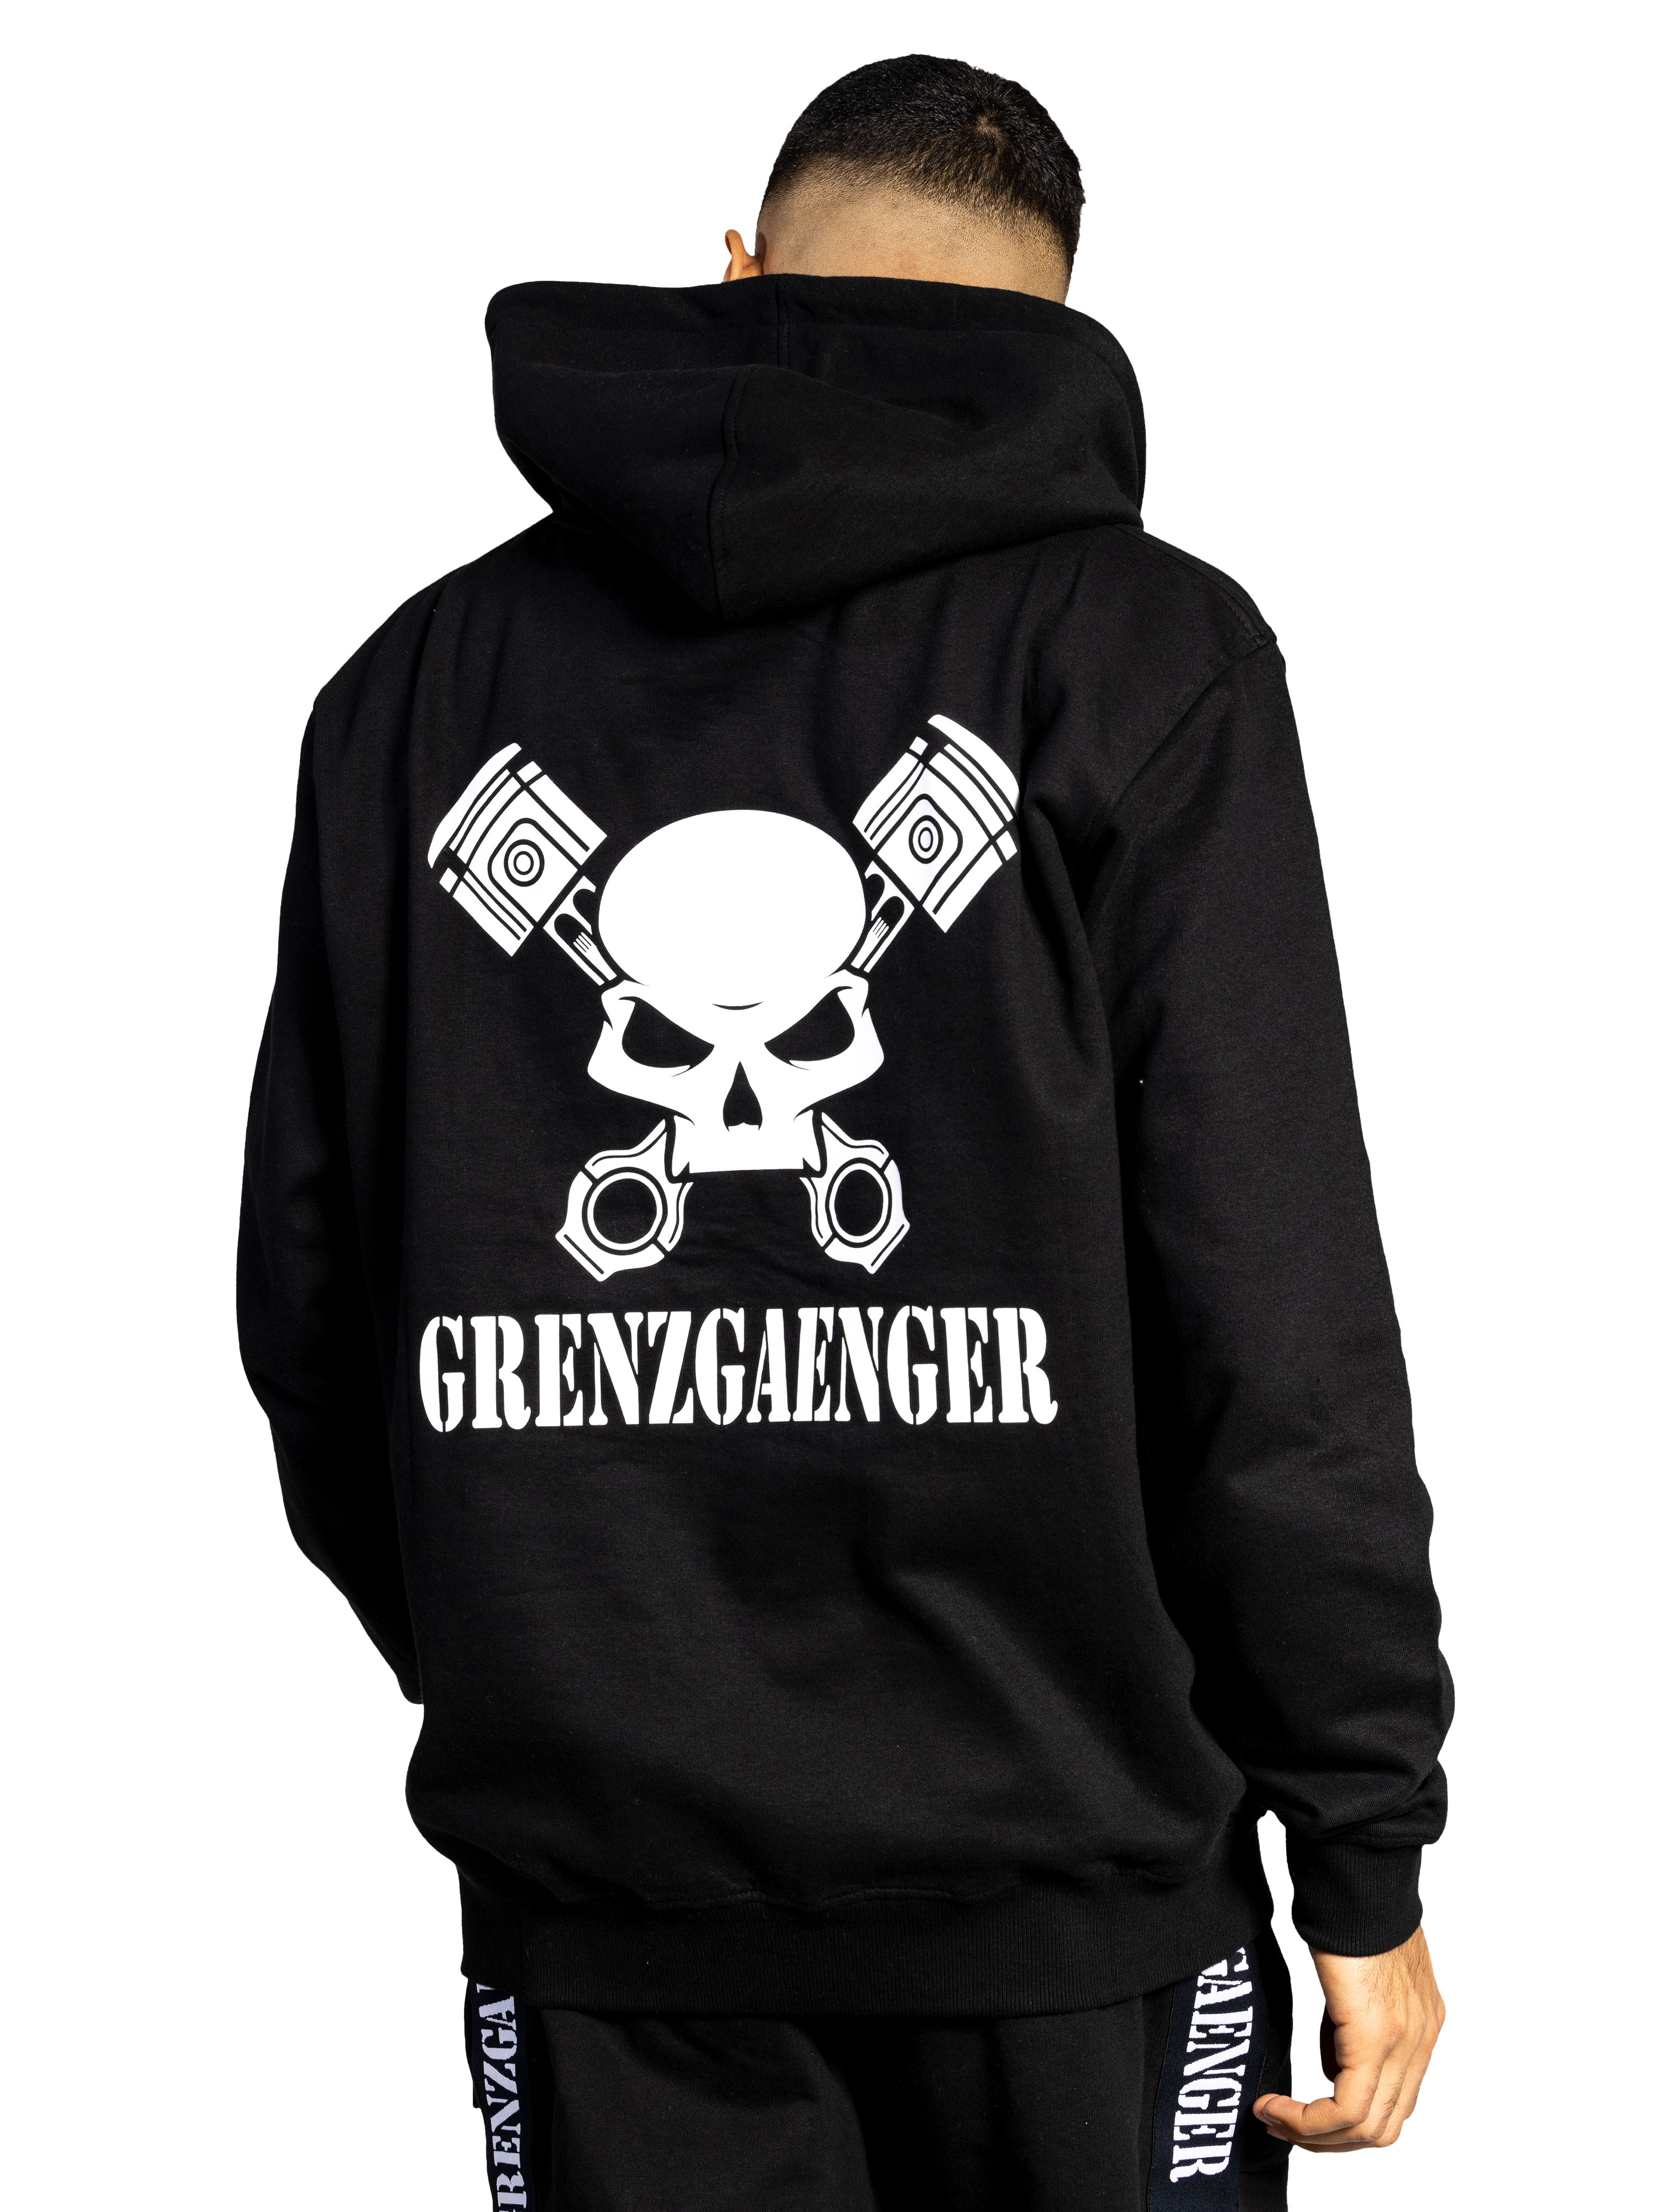 Grenzgaenger Shop